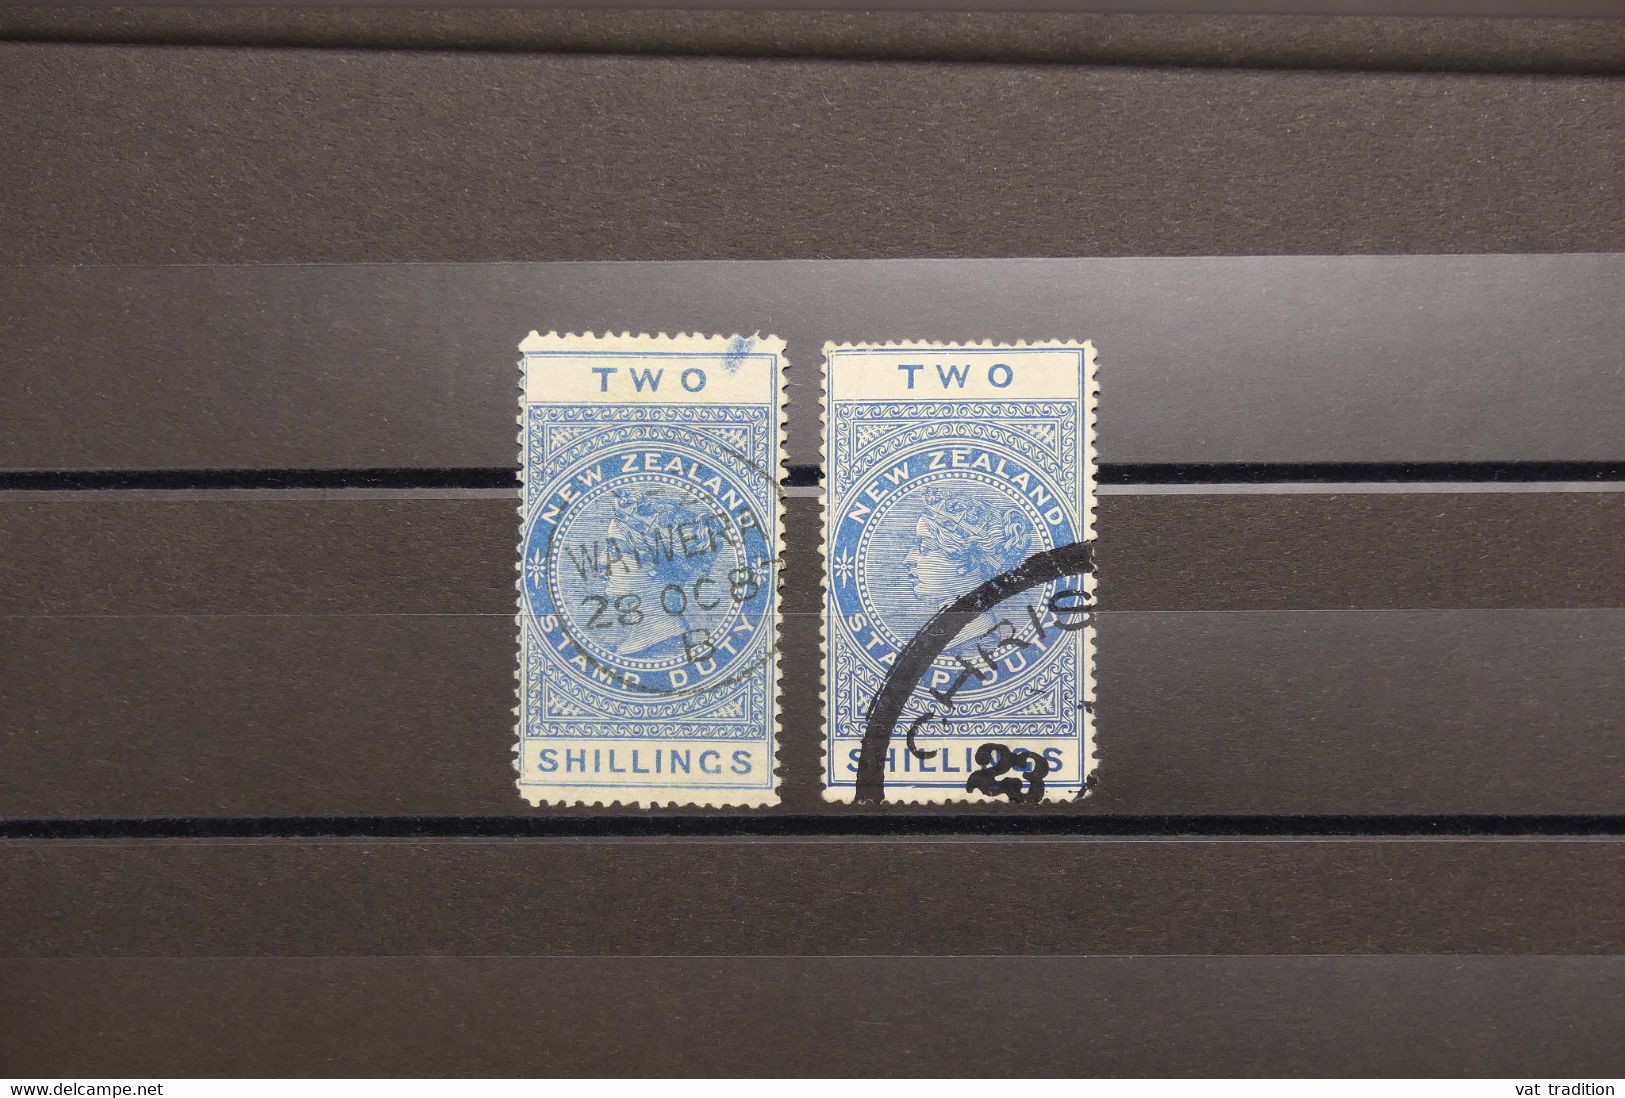 NOUVELLE ZÉLANDE - Fiscaux - Type Victoria 2S - Oblitérés. - L 125081 - Postal Fiscal Stamps